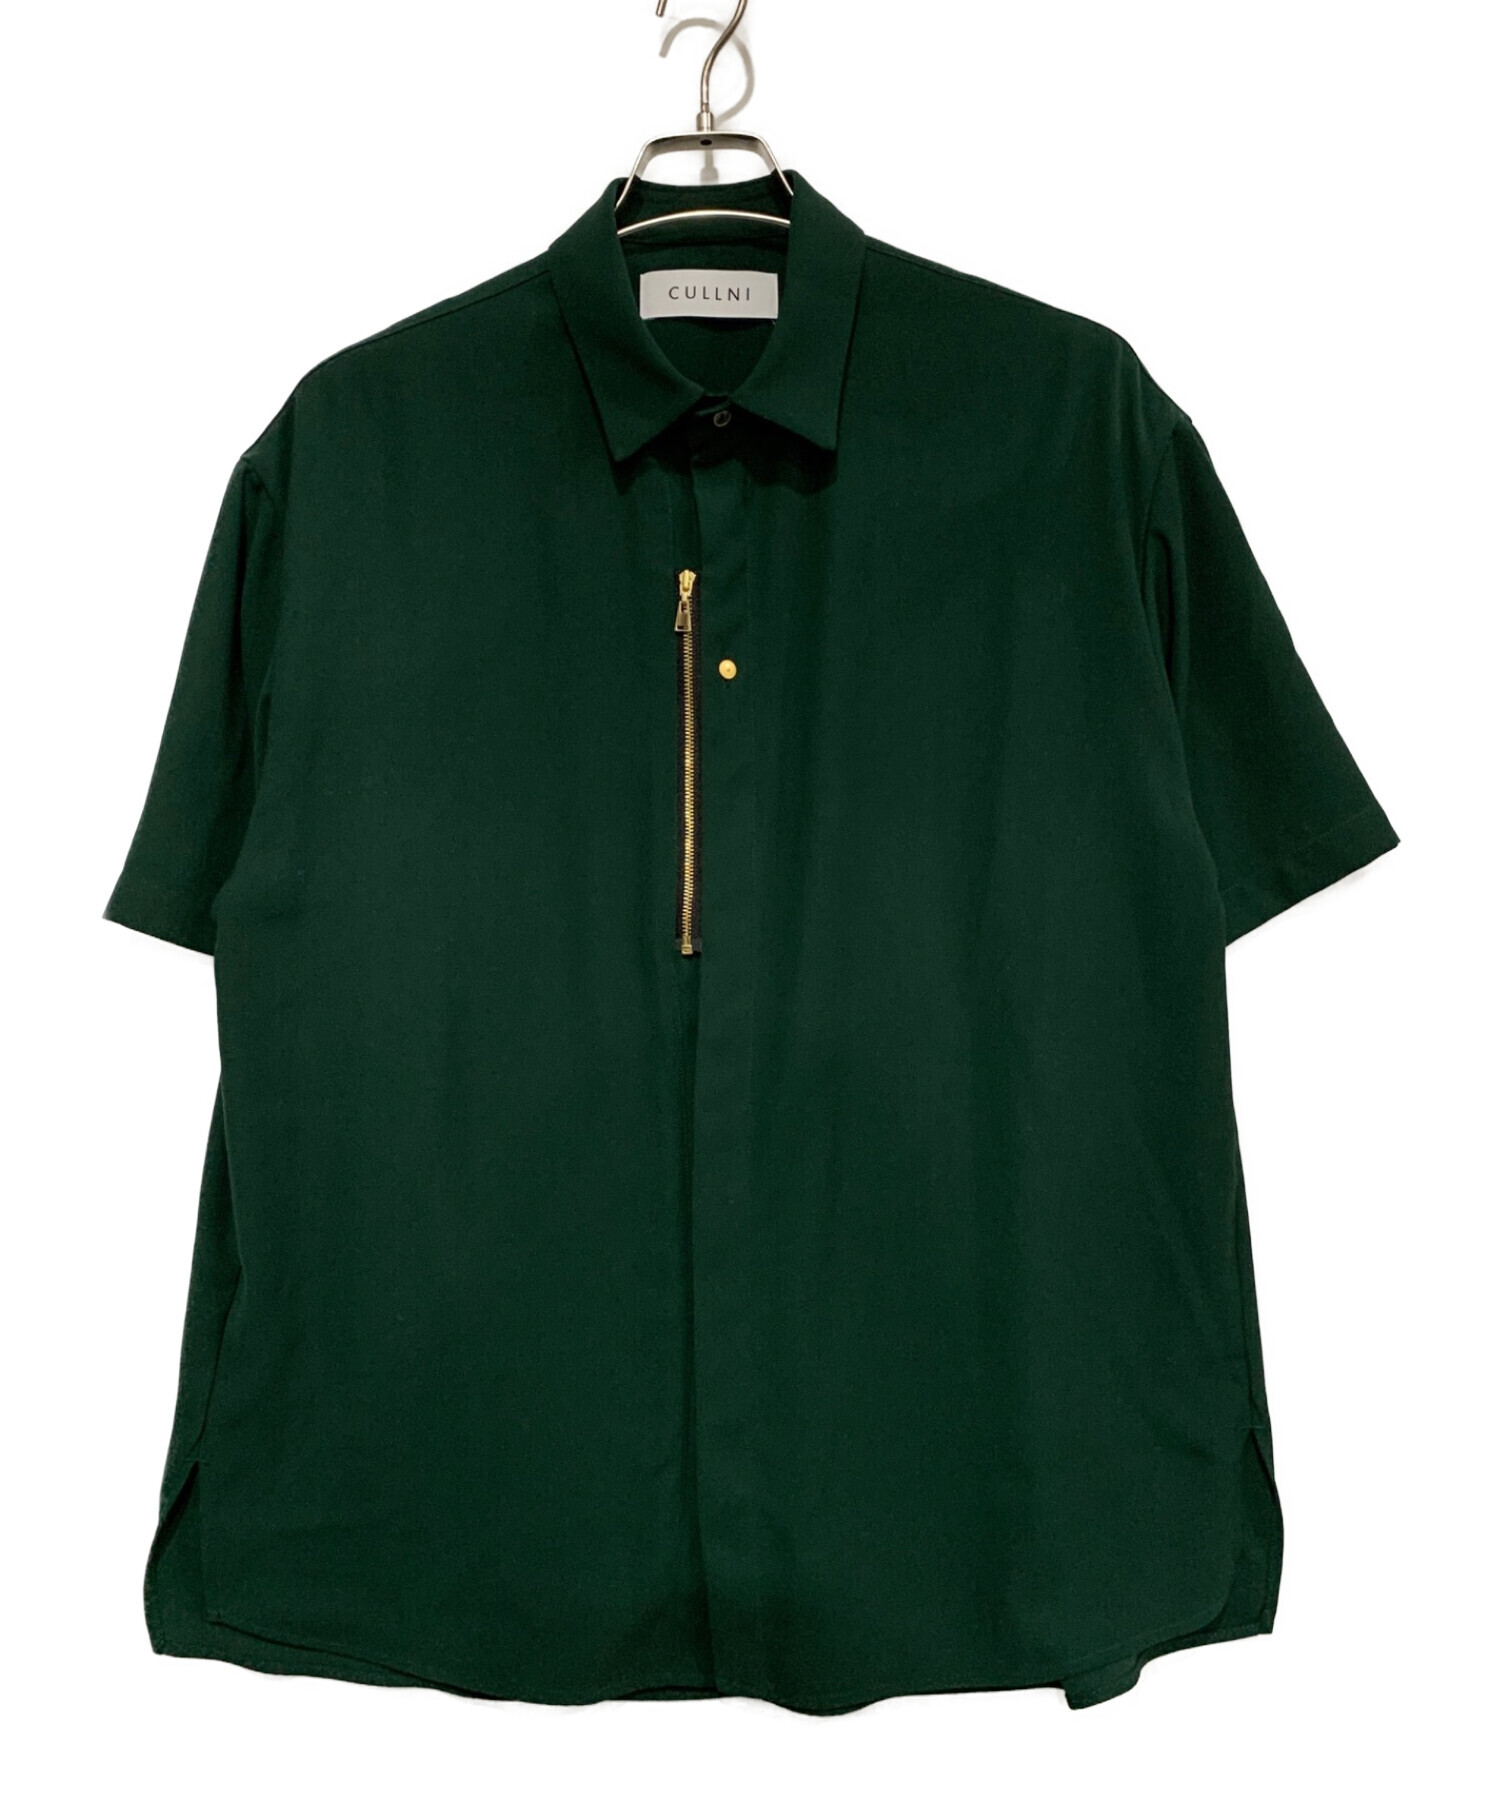 中古・古着通販】CULLNI (クルニ) 半袖ジップシャツ グリーン サイズ:M 